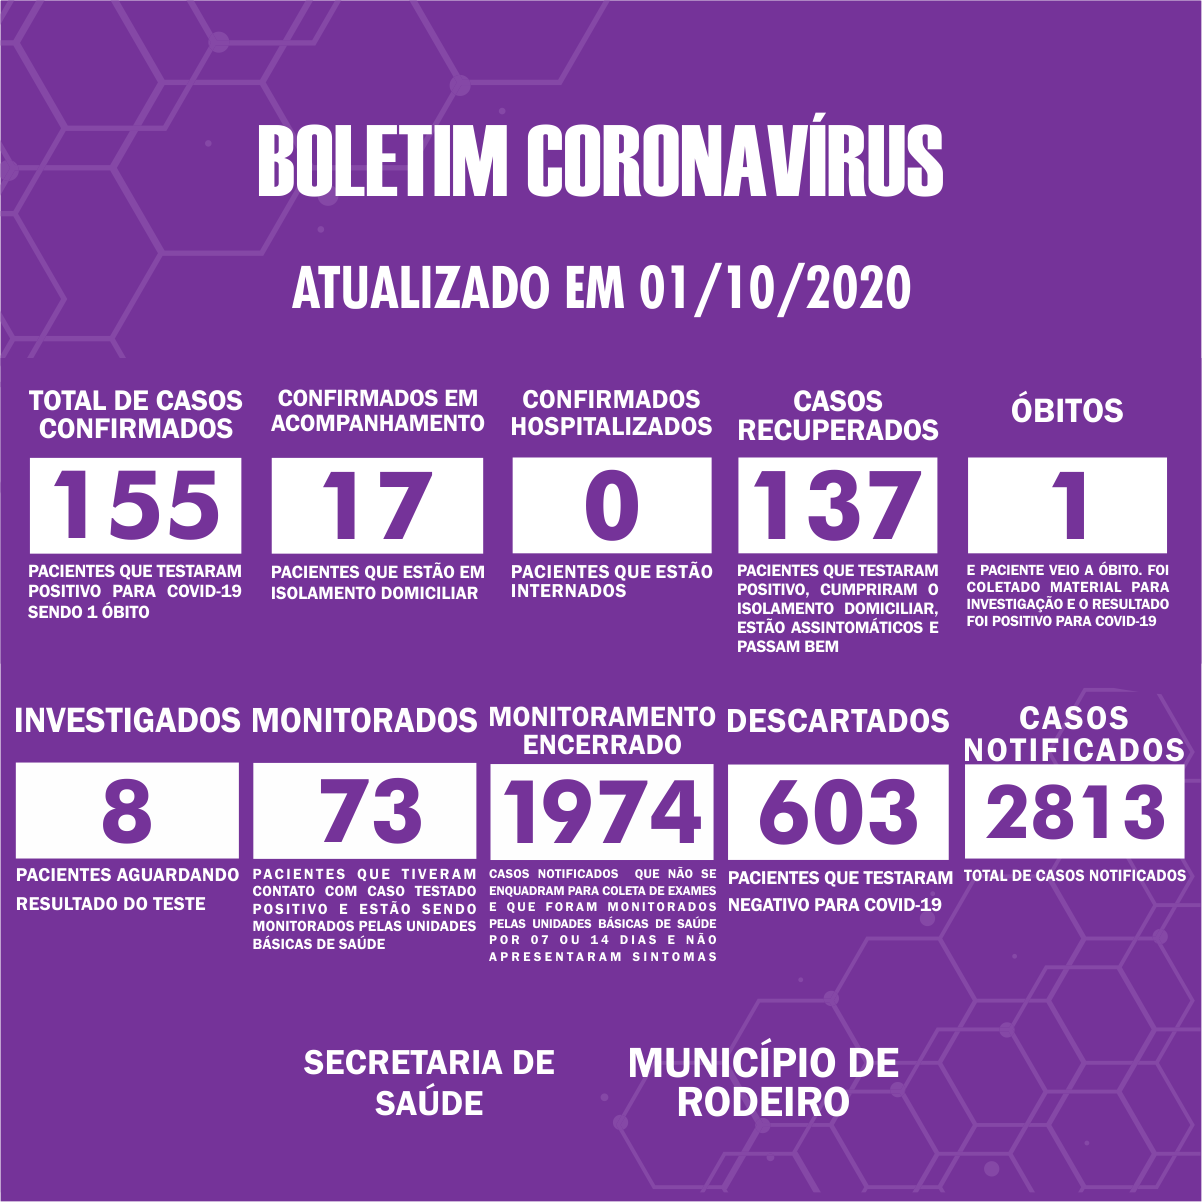 Boletim Epidemiológico do Município de Rodeiro sobre coronavírus, atualizado em 01/10/2020